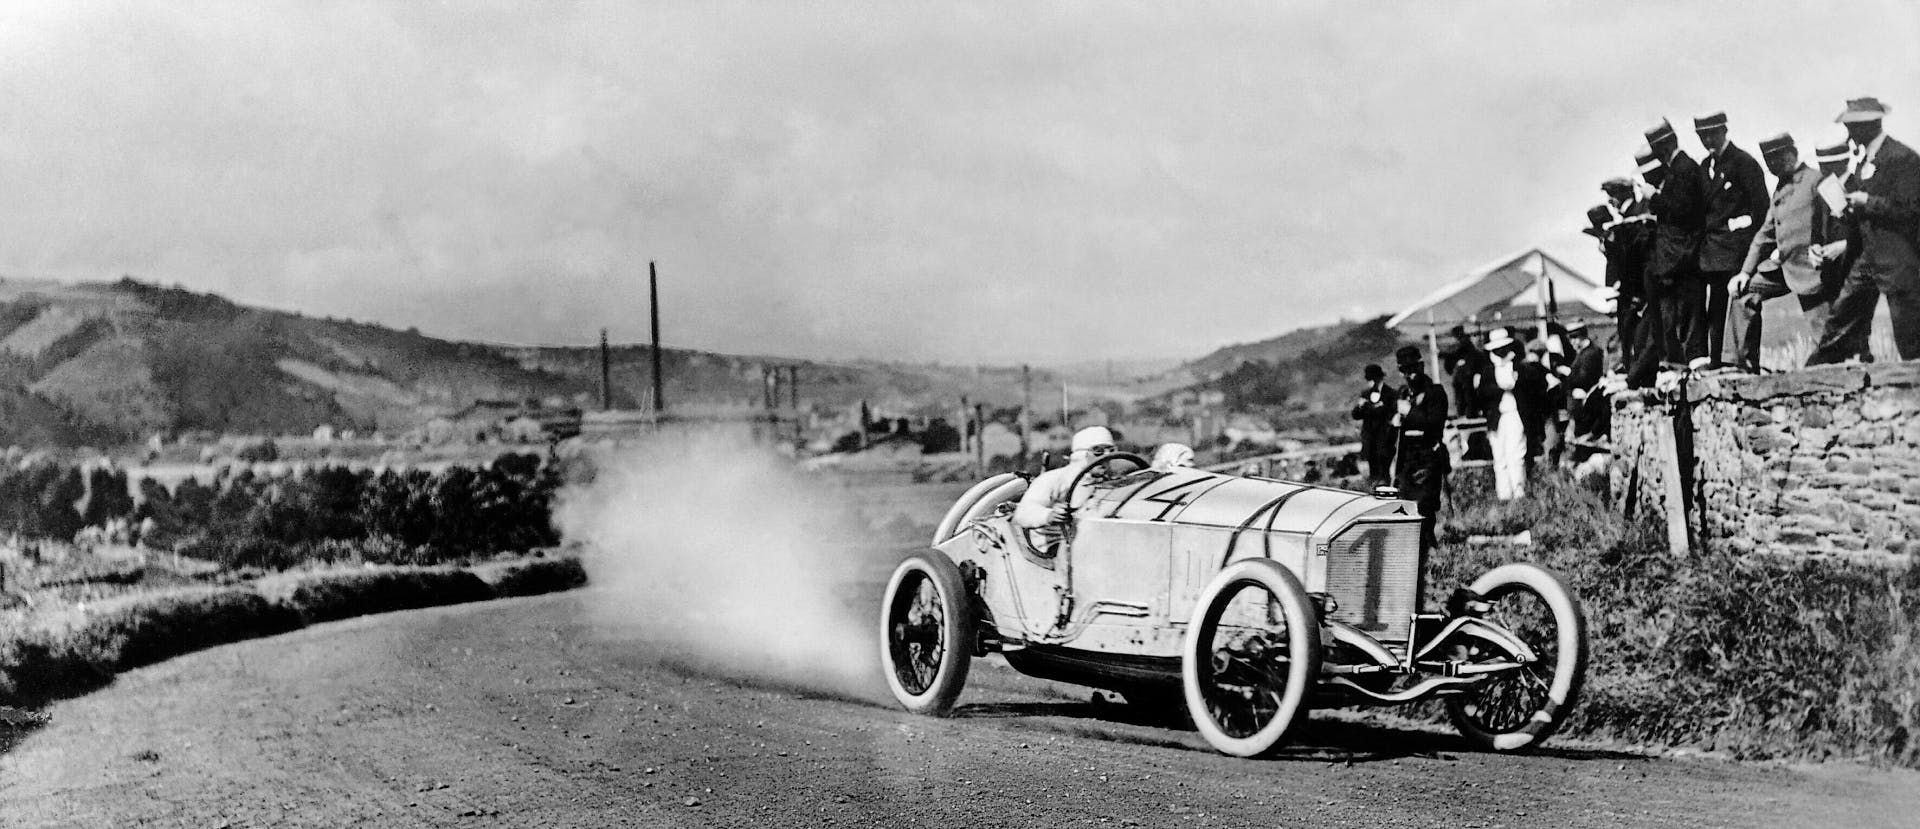 Ralph de Palma racing action